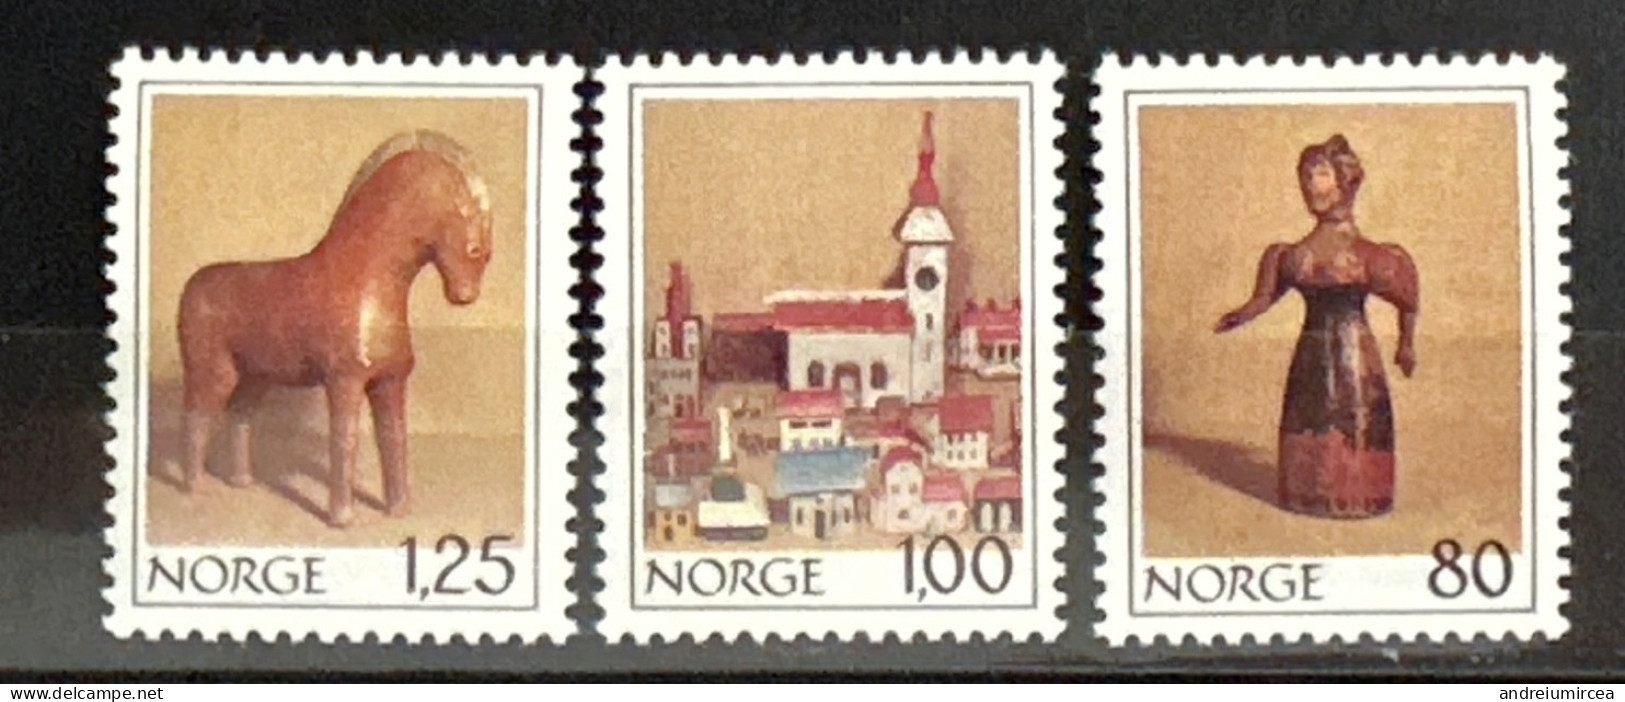 Norvege MNH - Unused Stamps